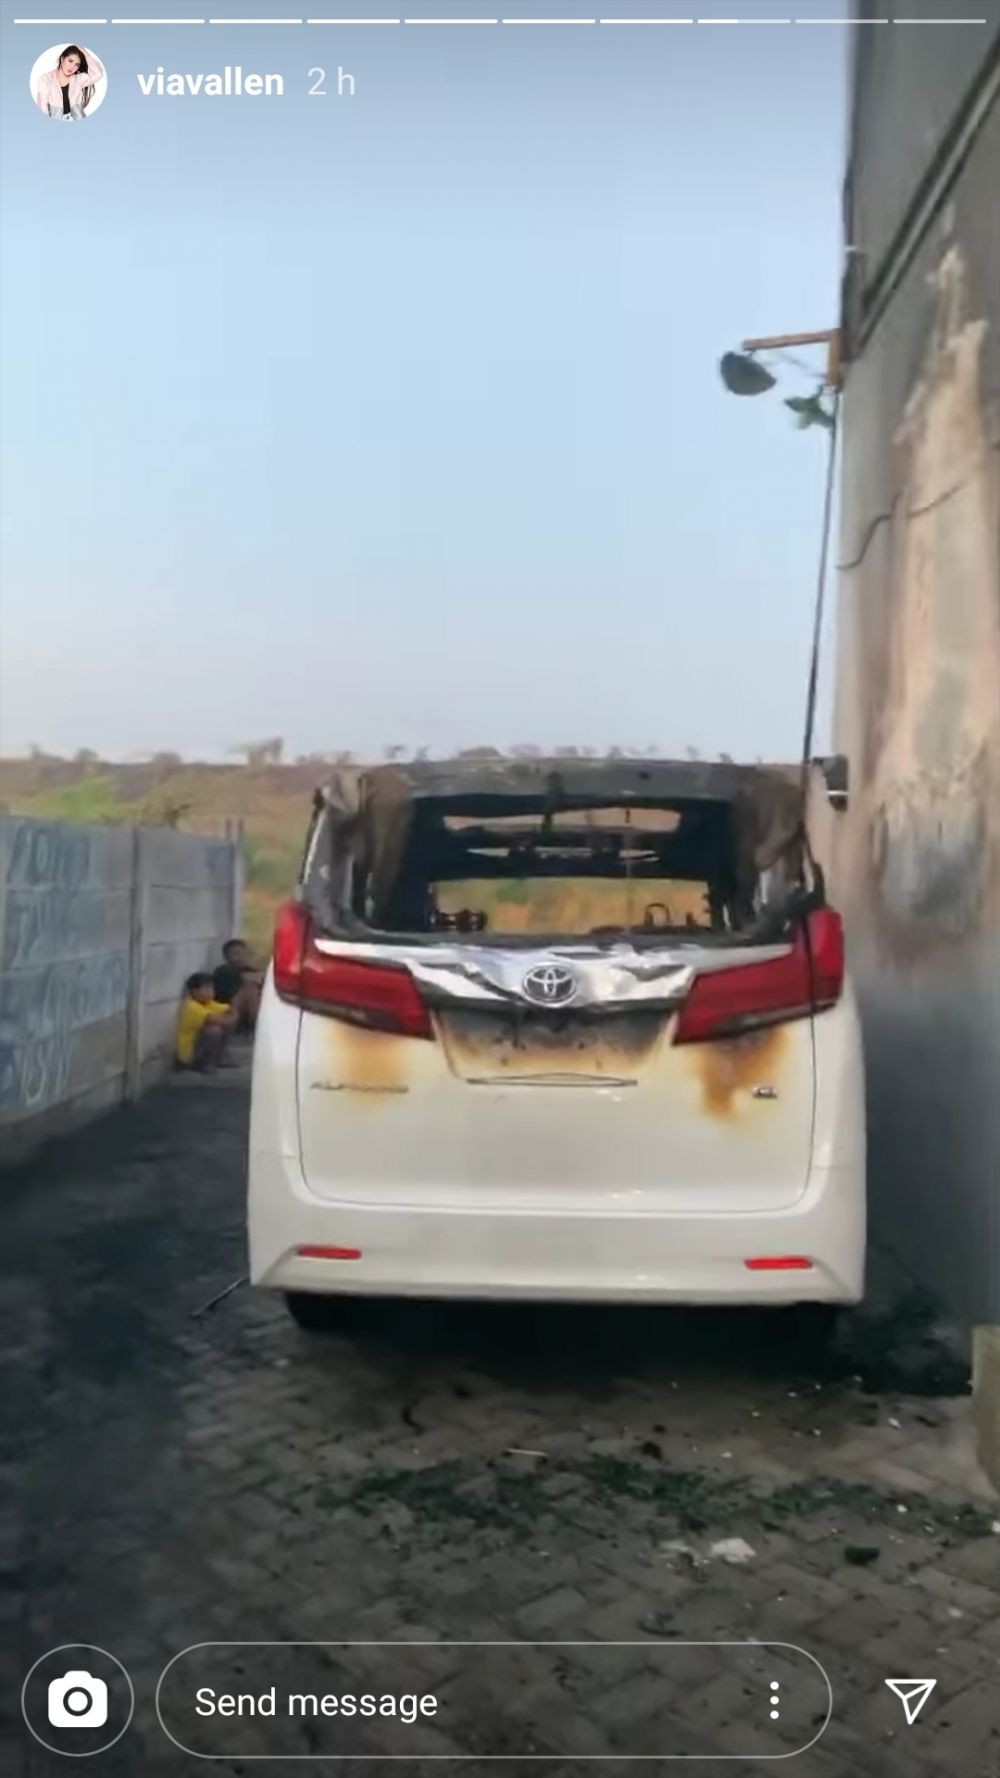 Mobil Mewah Via Vallen Terbakar, Polisi Masih Tunggu Hasil Labfor